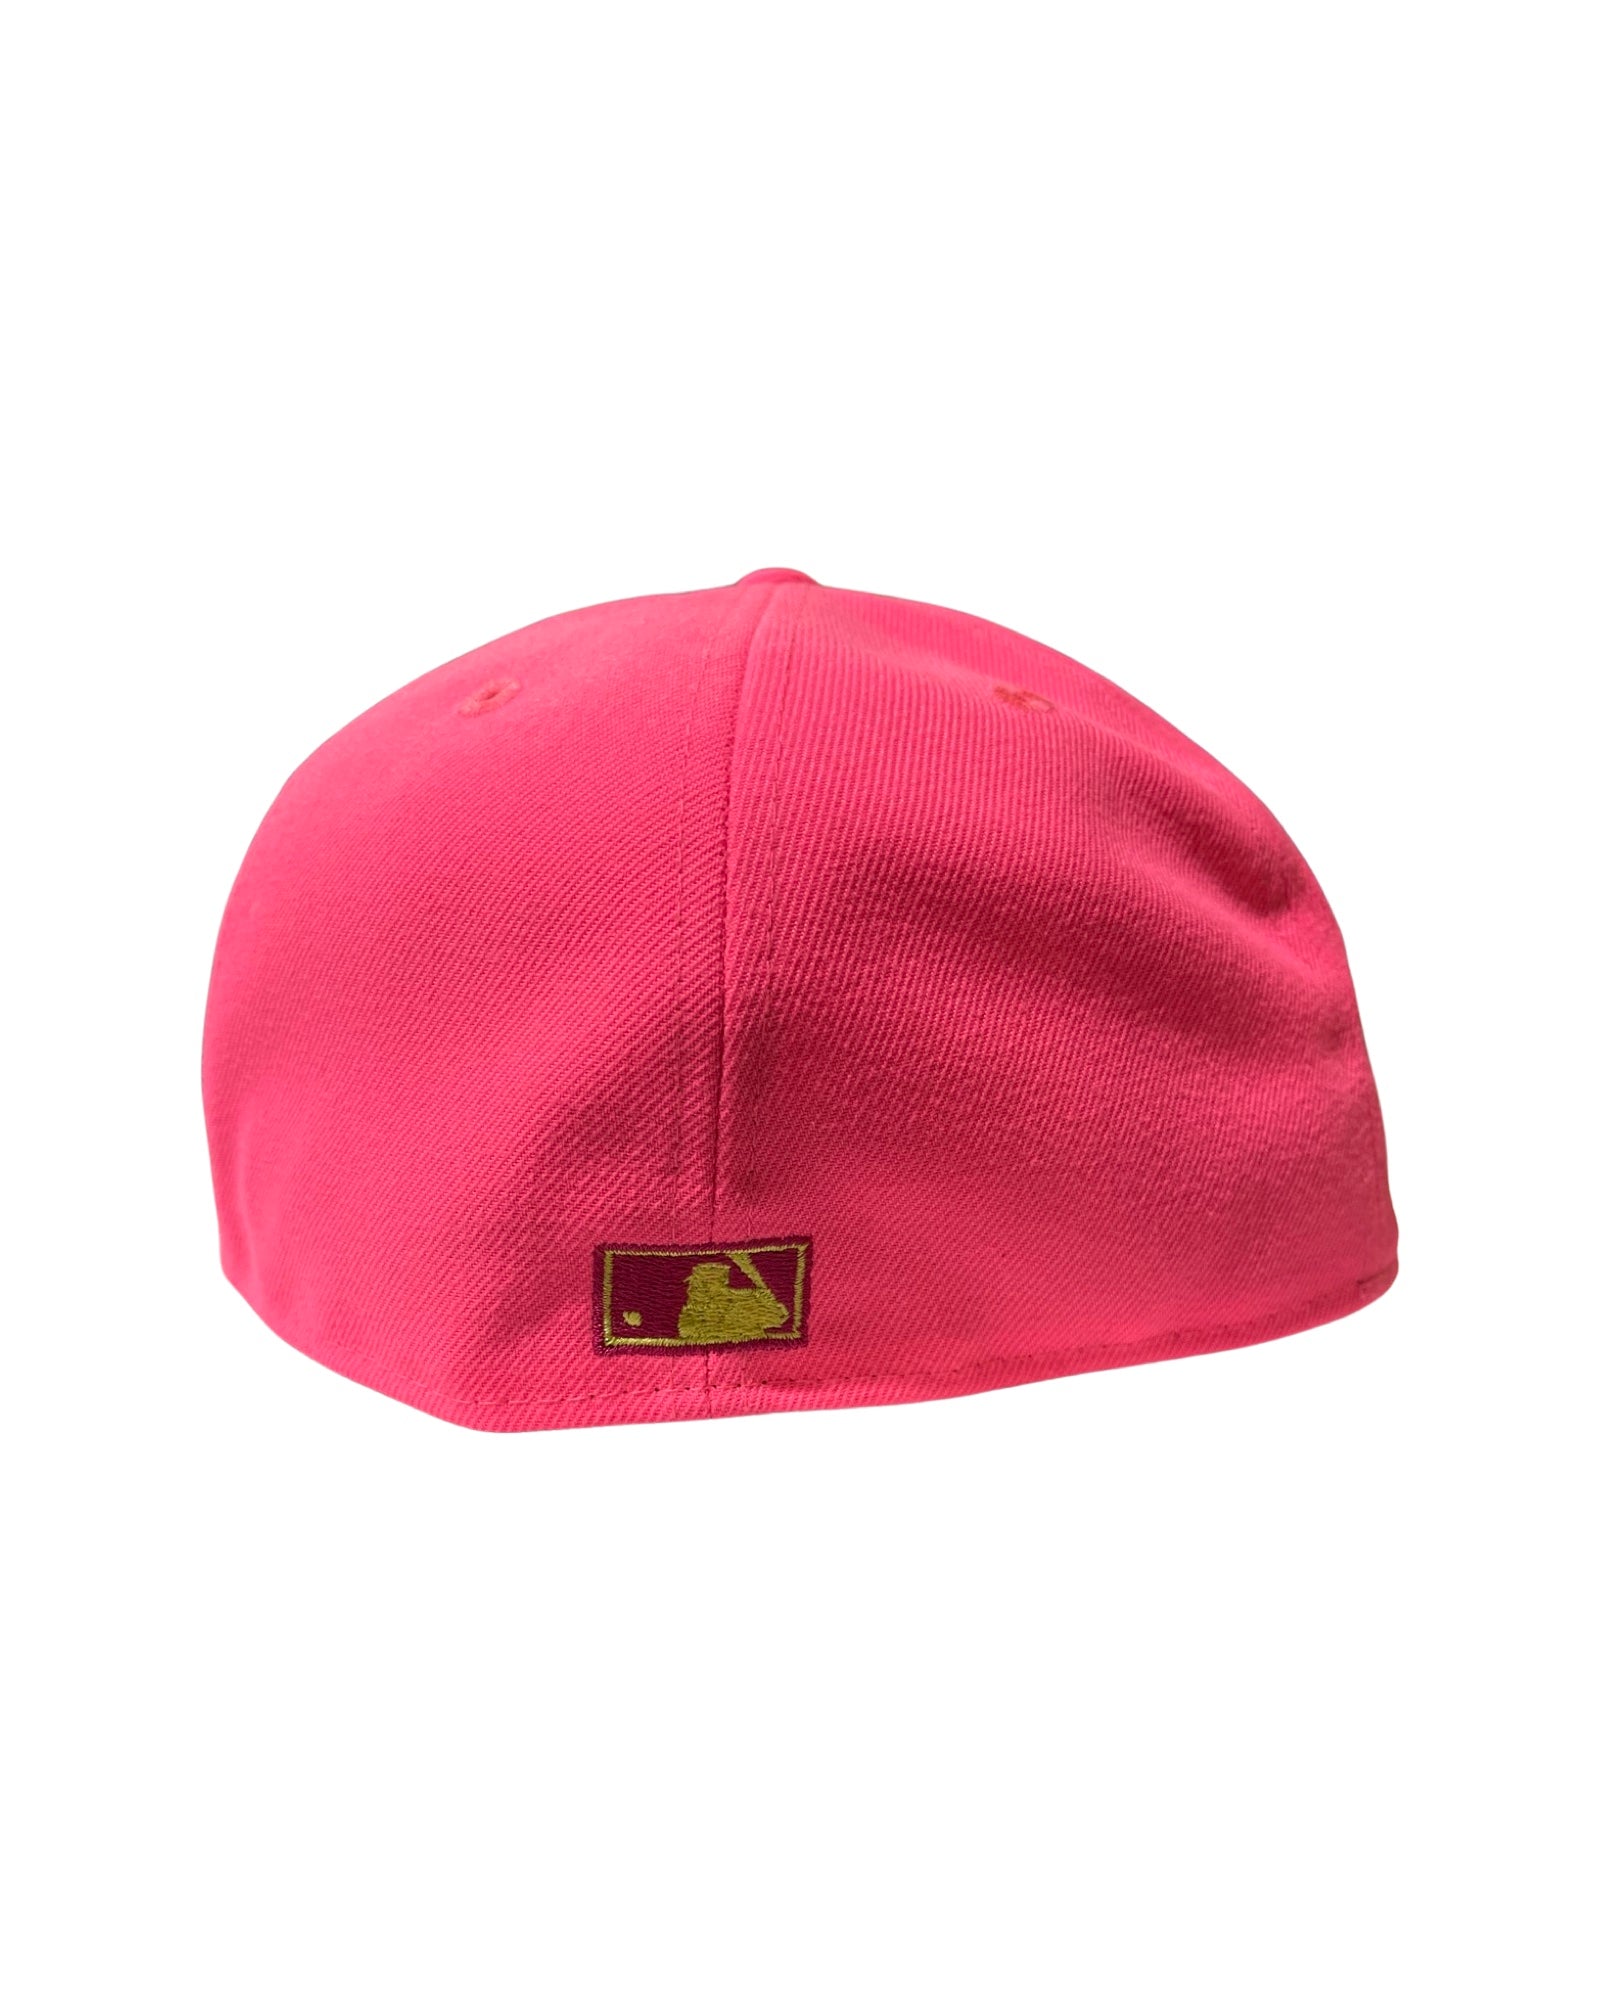 New Era Hats - Anaheim Angels - Pink Glow